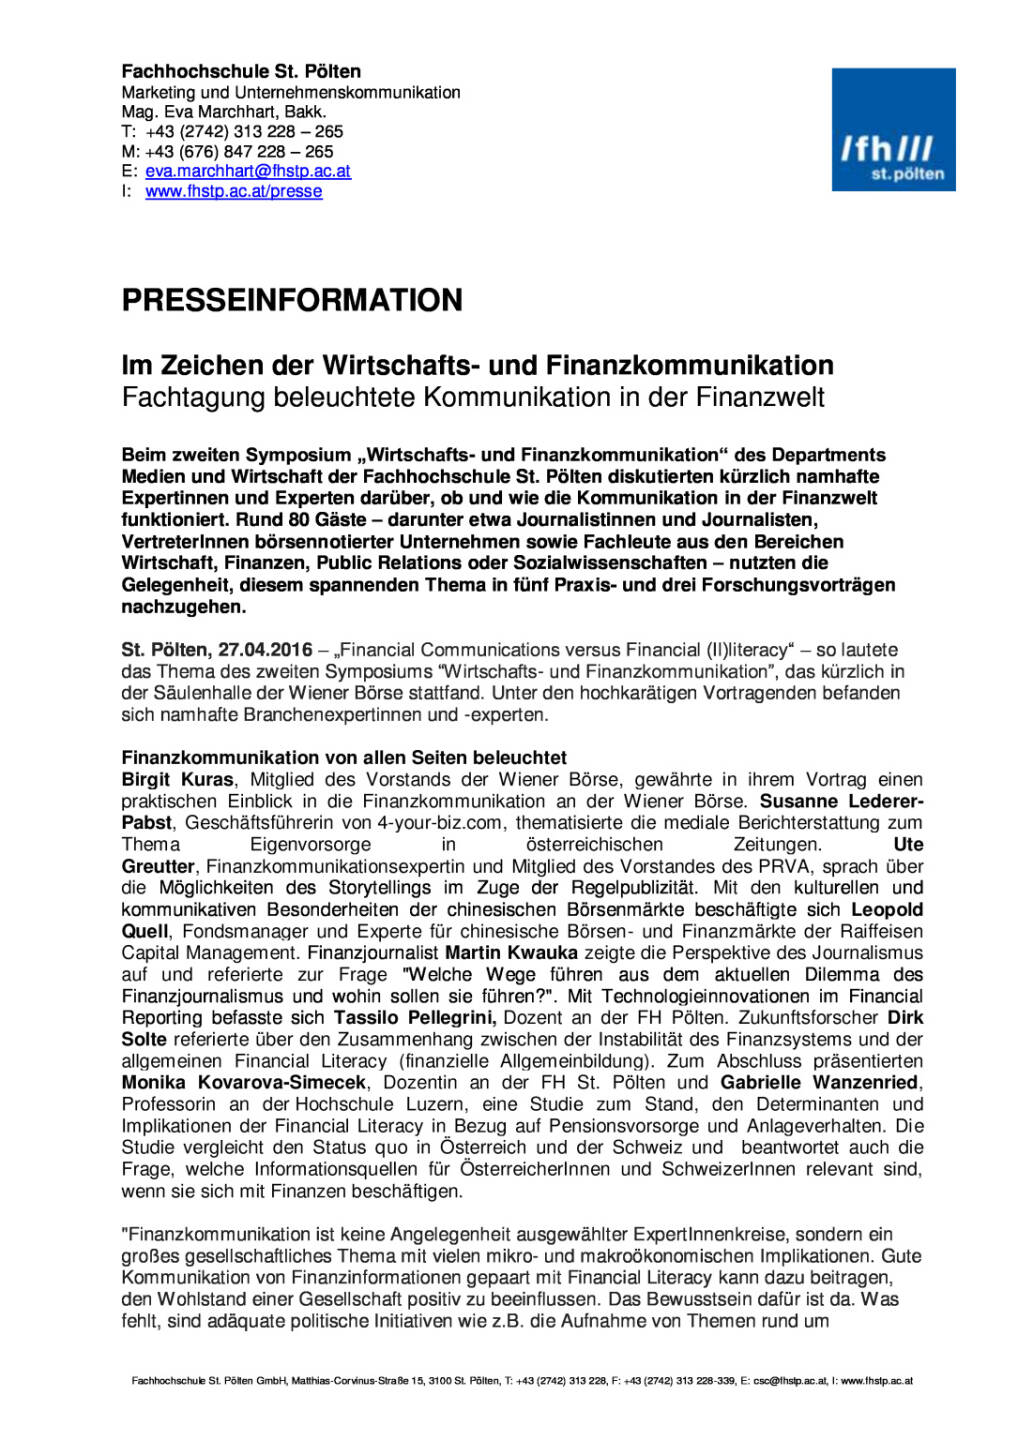 FH St. Pölten: Symposium Wirtschafts- und Finanzkommunikation , Seite 1/2, komplettes Dokument unter http://boerse-social.com/static/uploads/file_957_fh_st_polten_symposium_wirtschafts-_und_finanzkommunikation.pdf